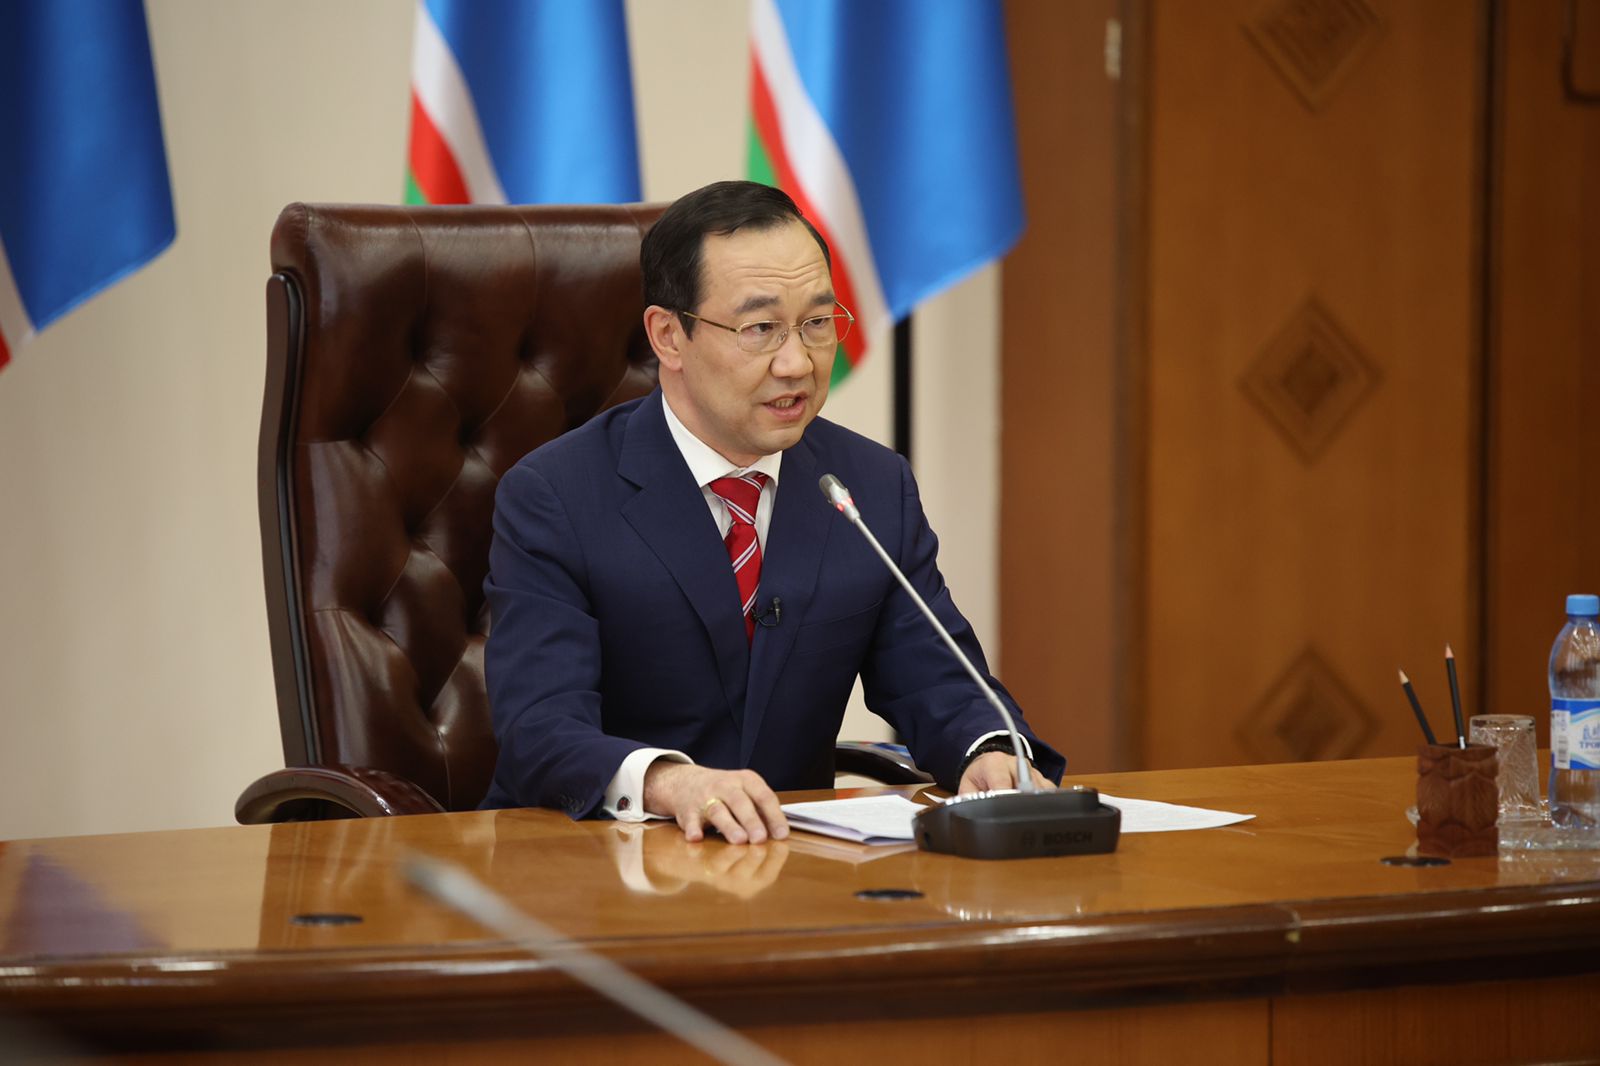 Глава Якутии заявил, что никакие санкции не cмогут препятствовать объединению вокруг общих ценностей